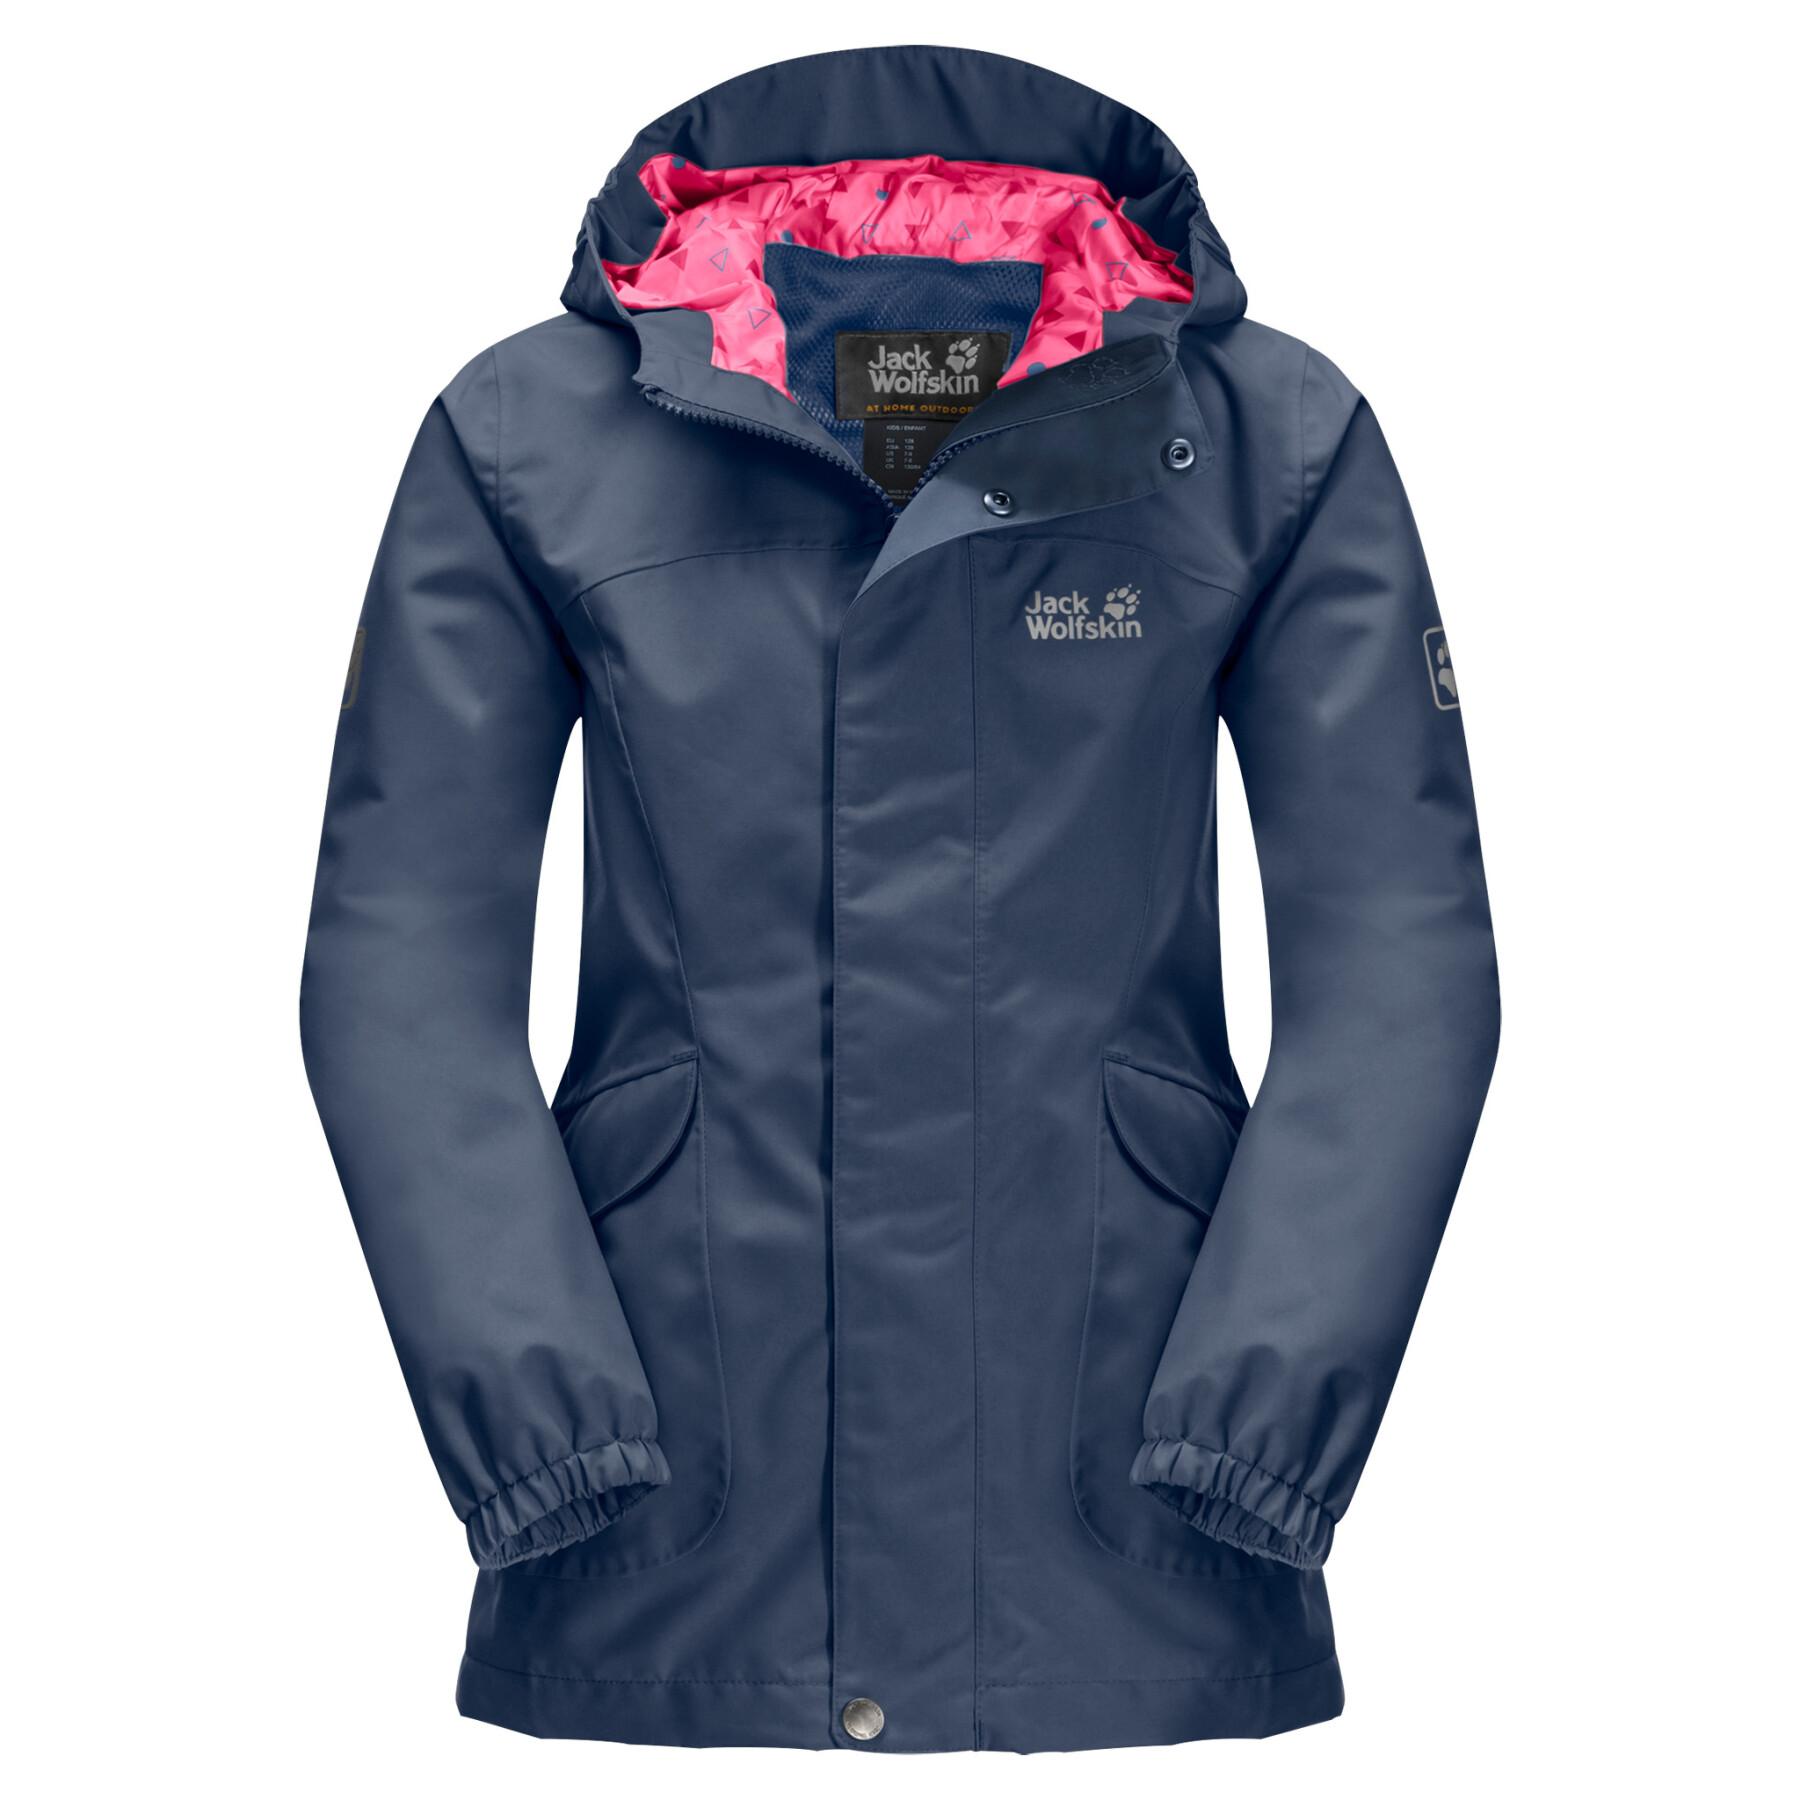 Waterproof jacket for girls Jack Wolfskin Rock Town